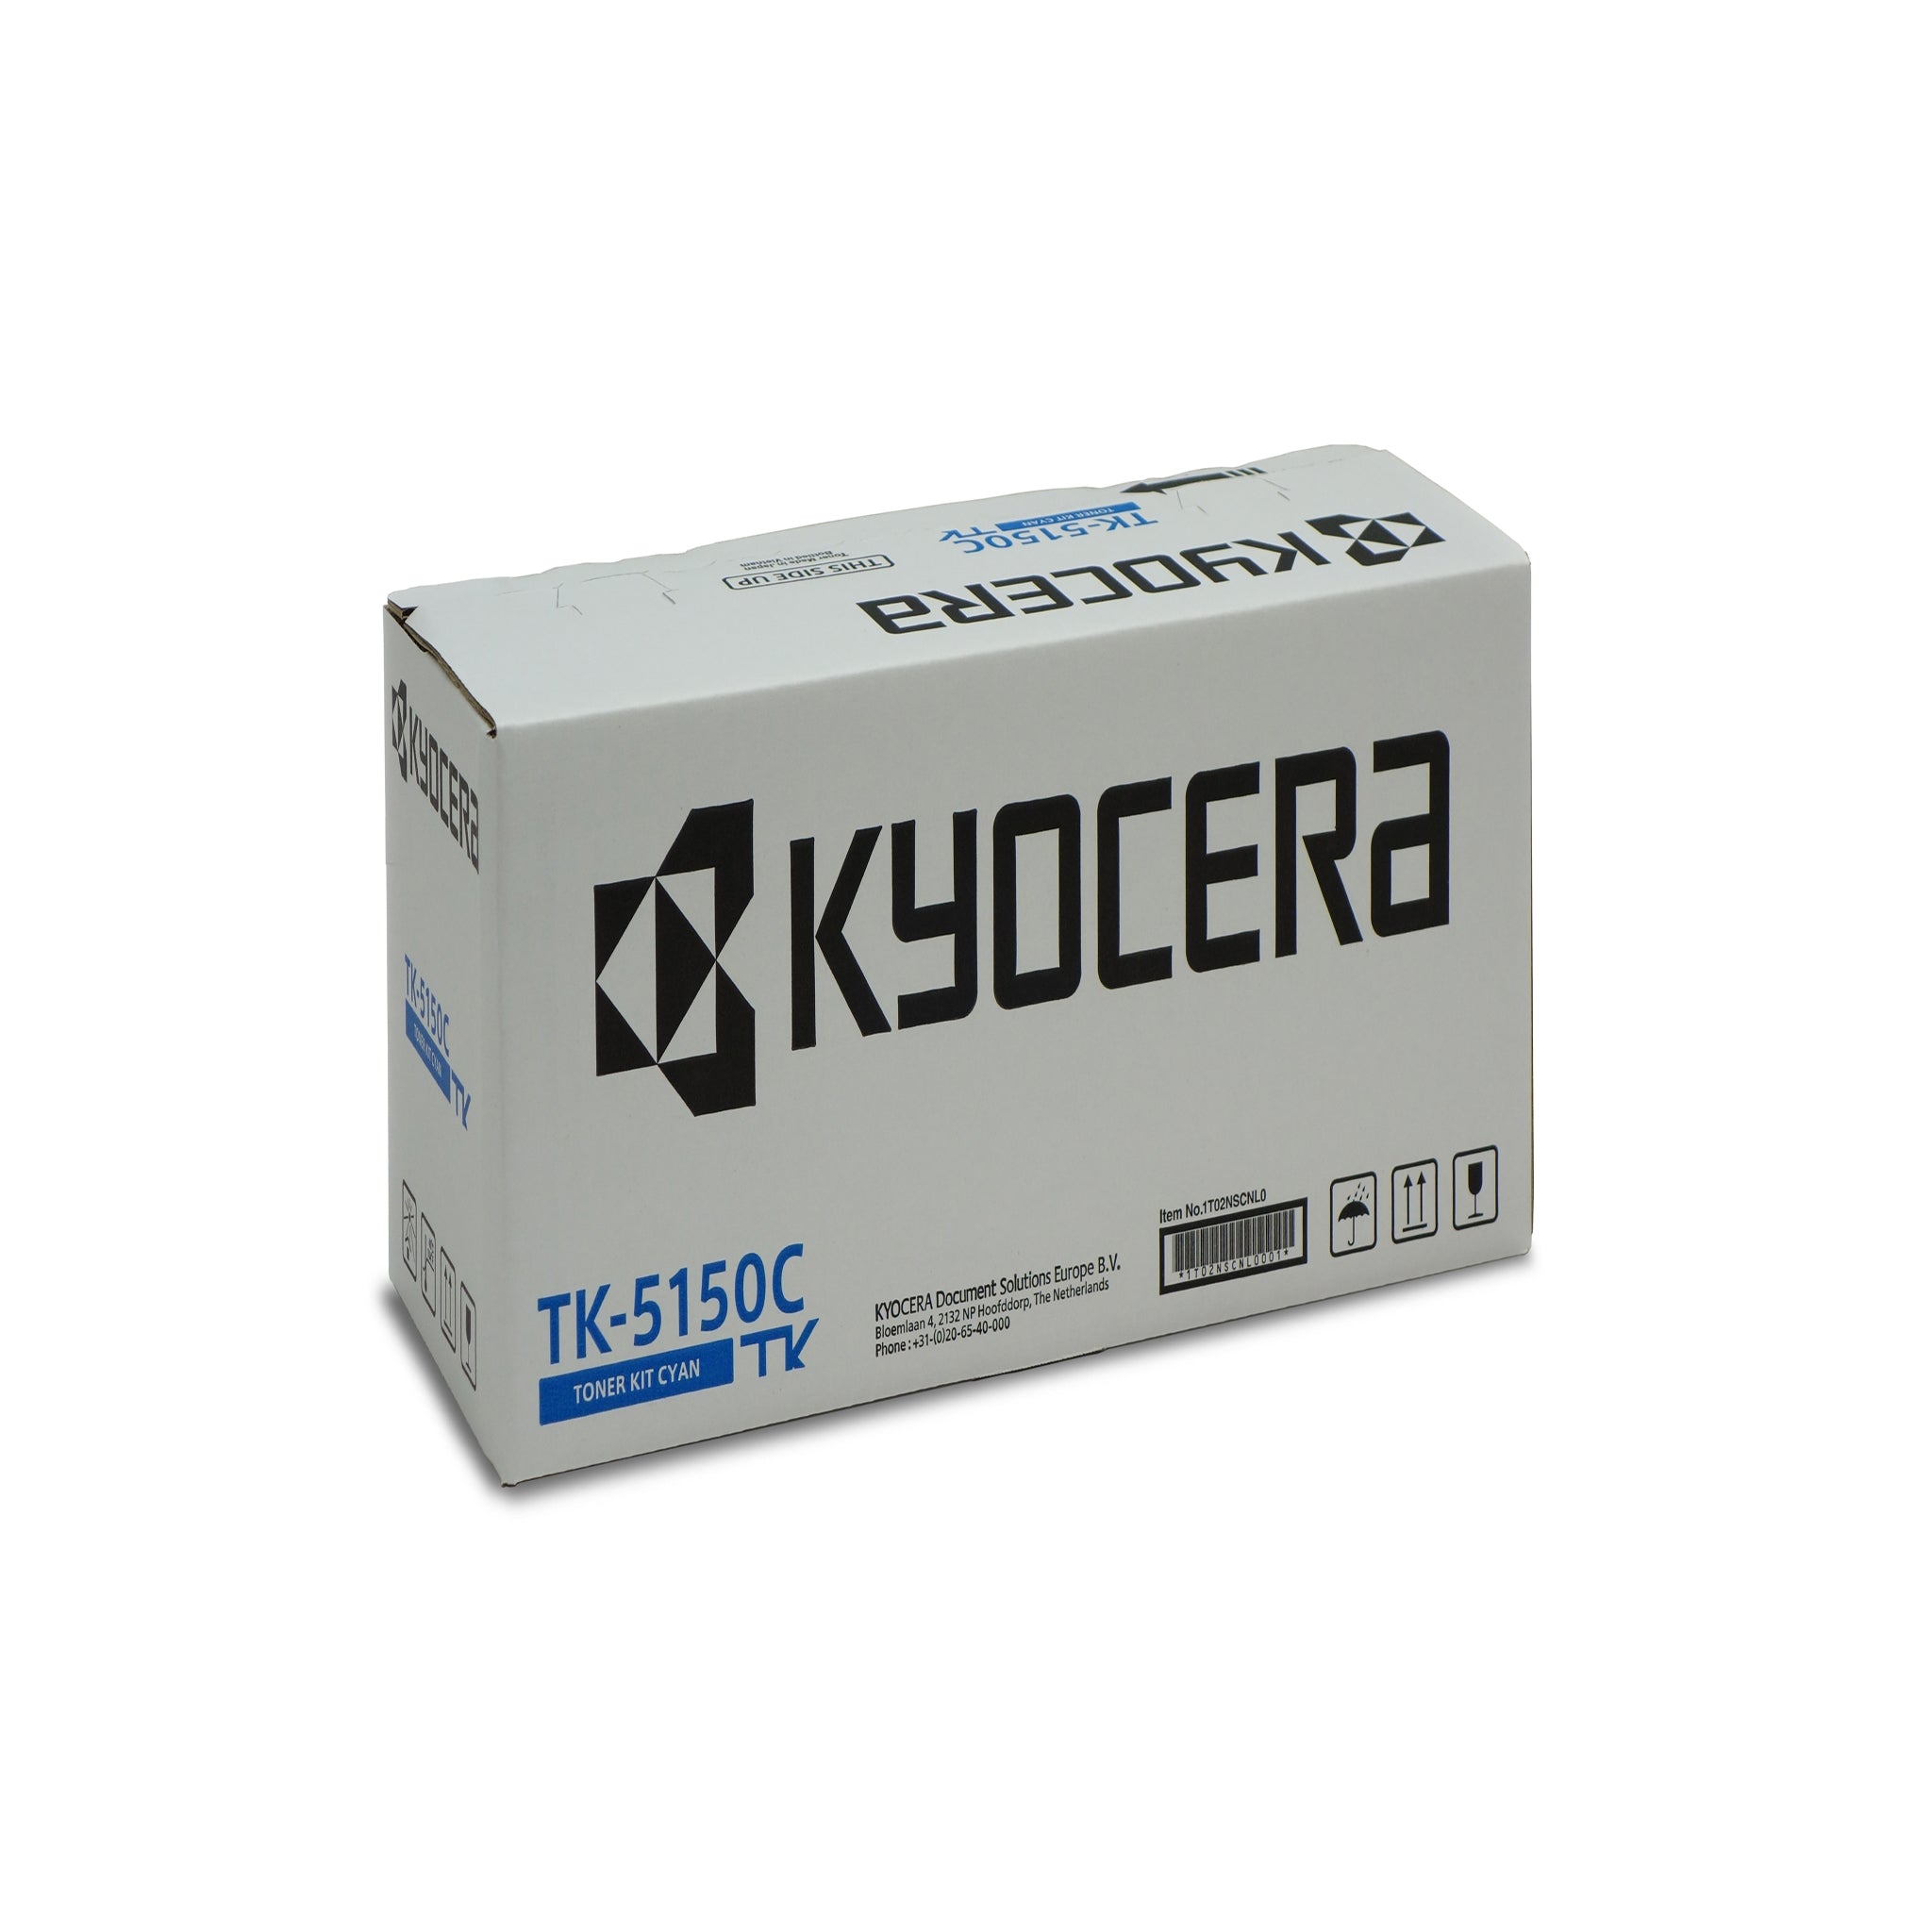 Tonerkartusche Original für Kyocera TK-5150